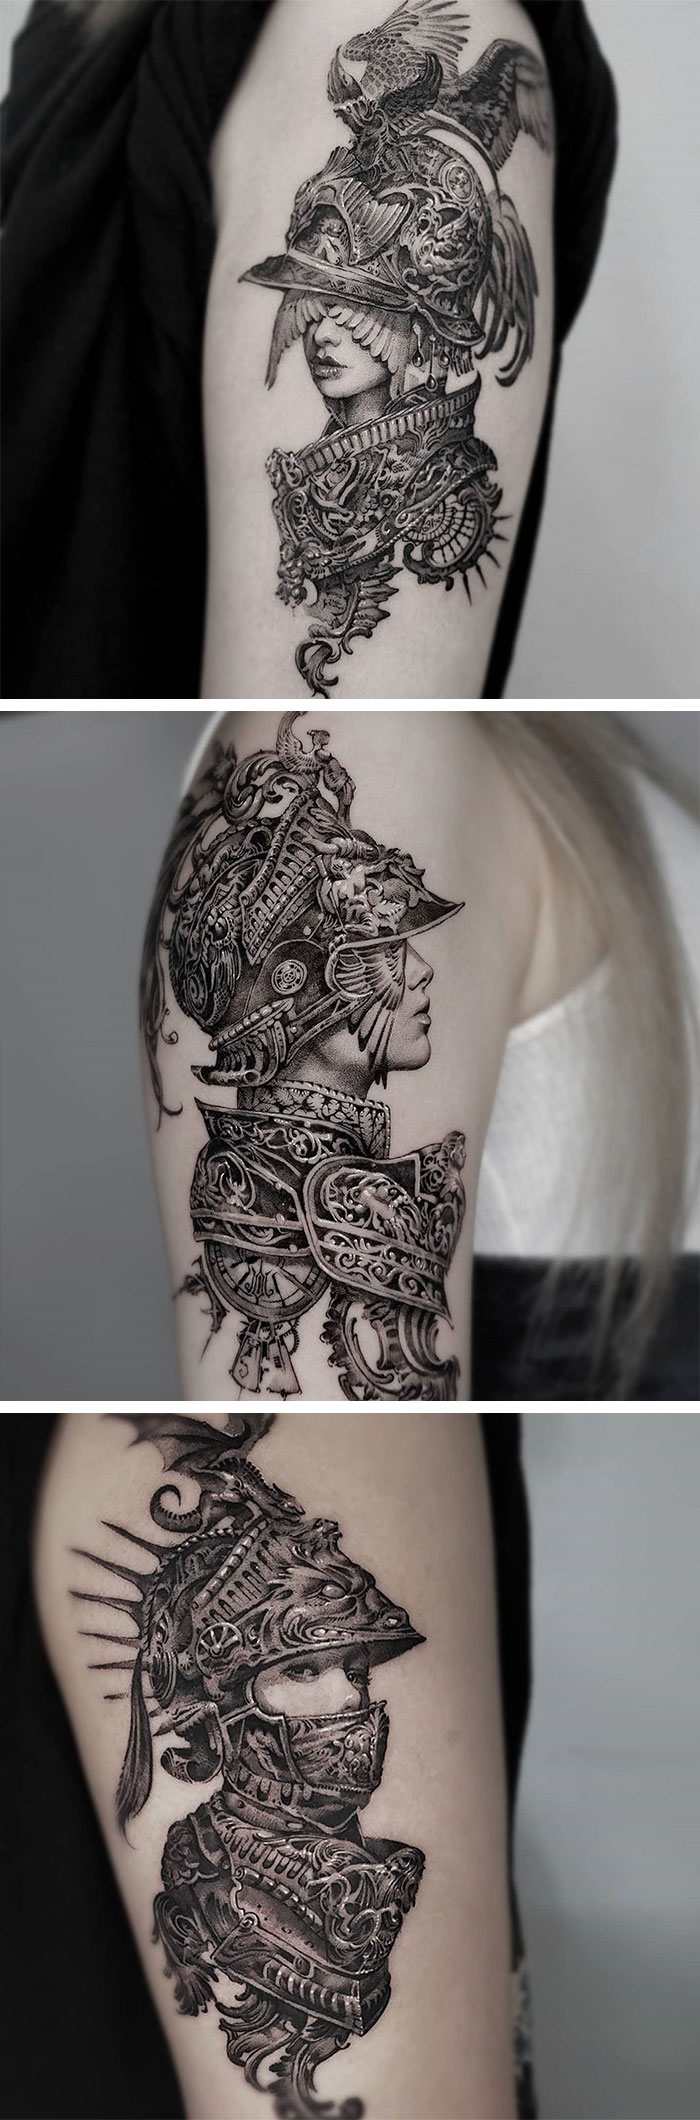 Knight Tattoos, By Tattooist Hwi